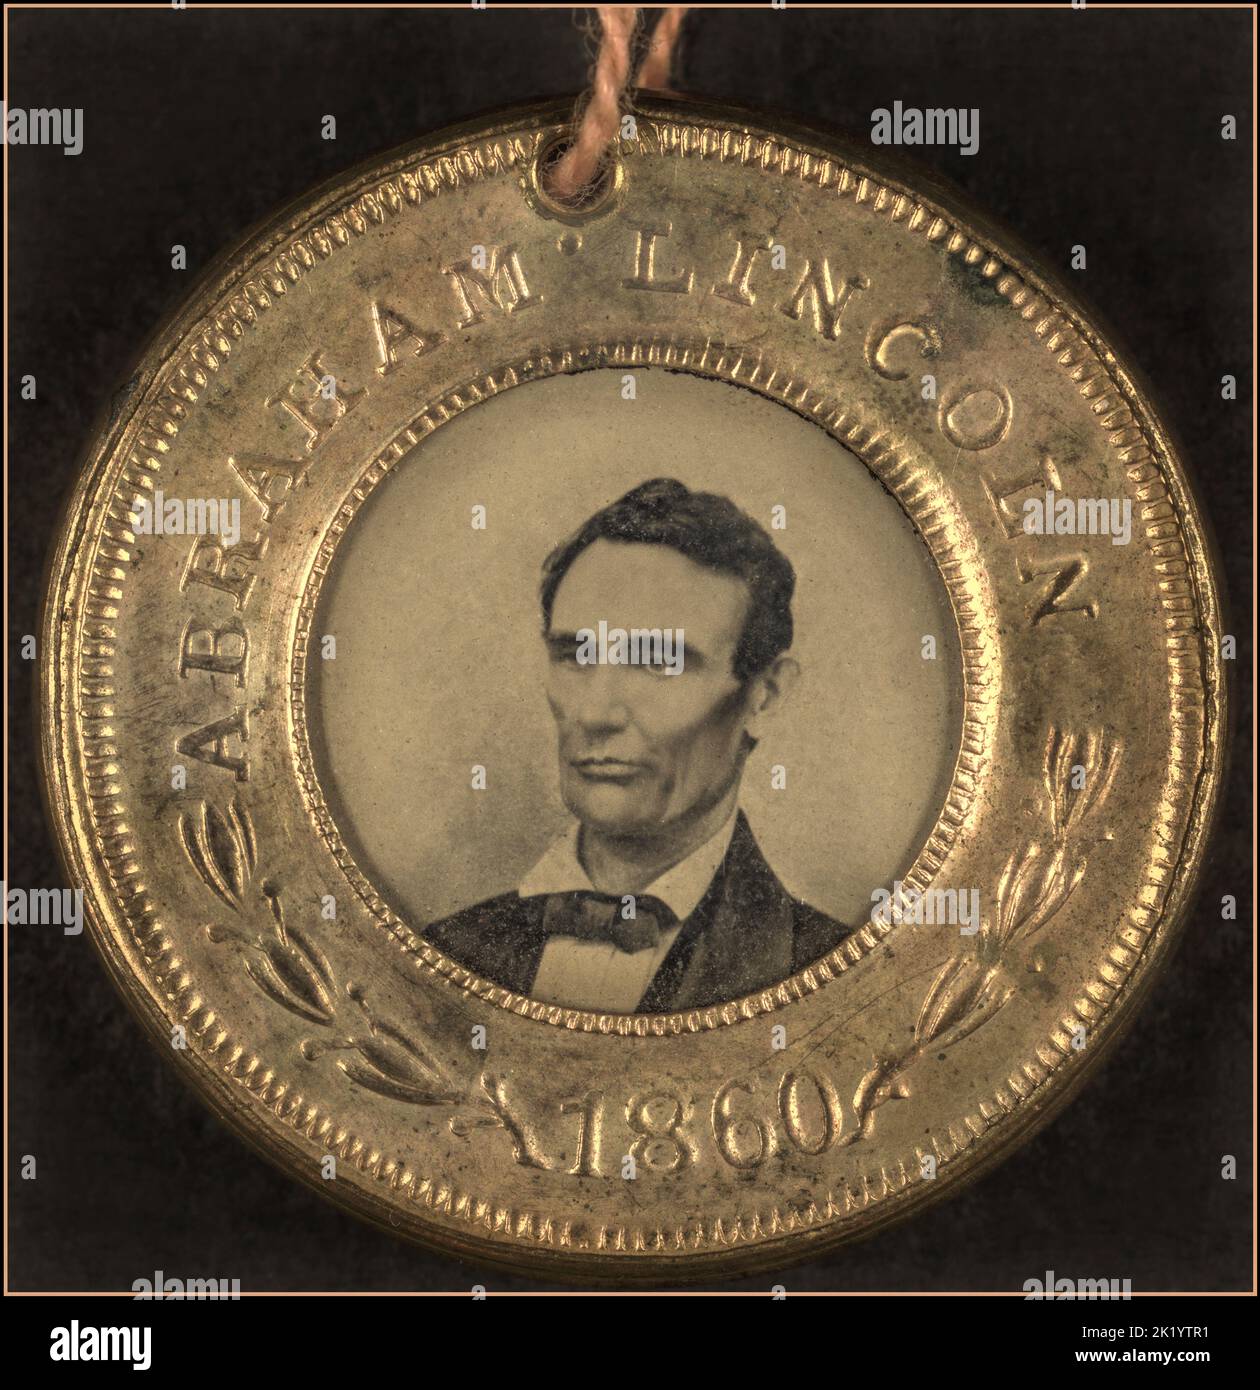 LINCOLN Presidential Campaign Button pour Abraham Lincoln, 1860. Portrait apparaît en tintype. Le côté inverse du bouton est un typede de la course Hannibal Hamlin. L'un des premiers exemples d'images photographiques sur des boutons politiques. Date 1860 Banque D'Images